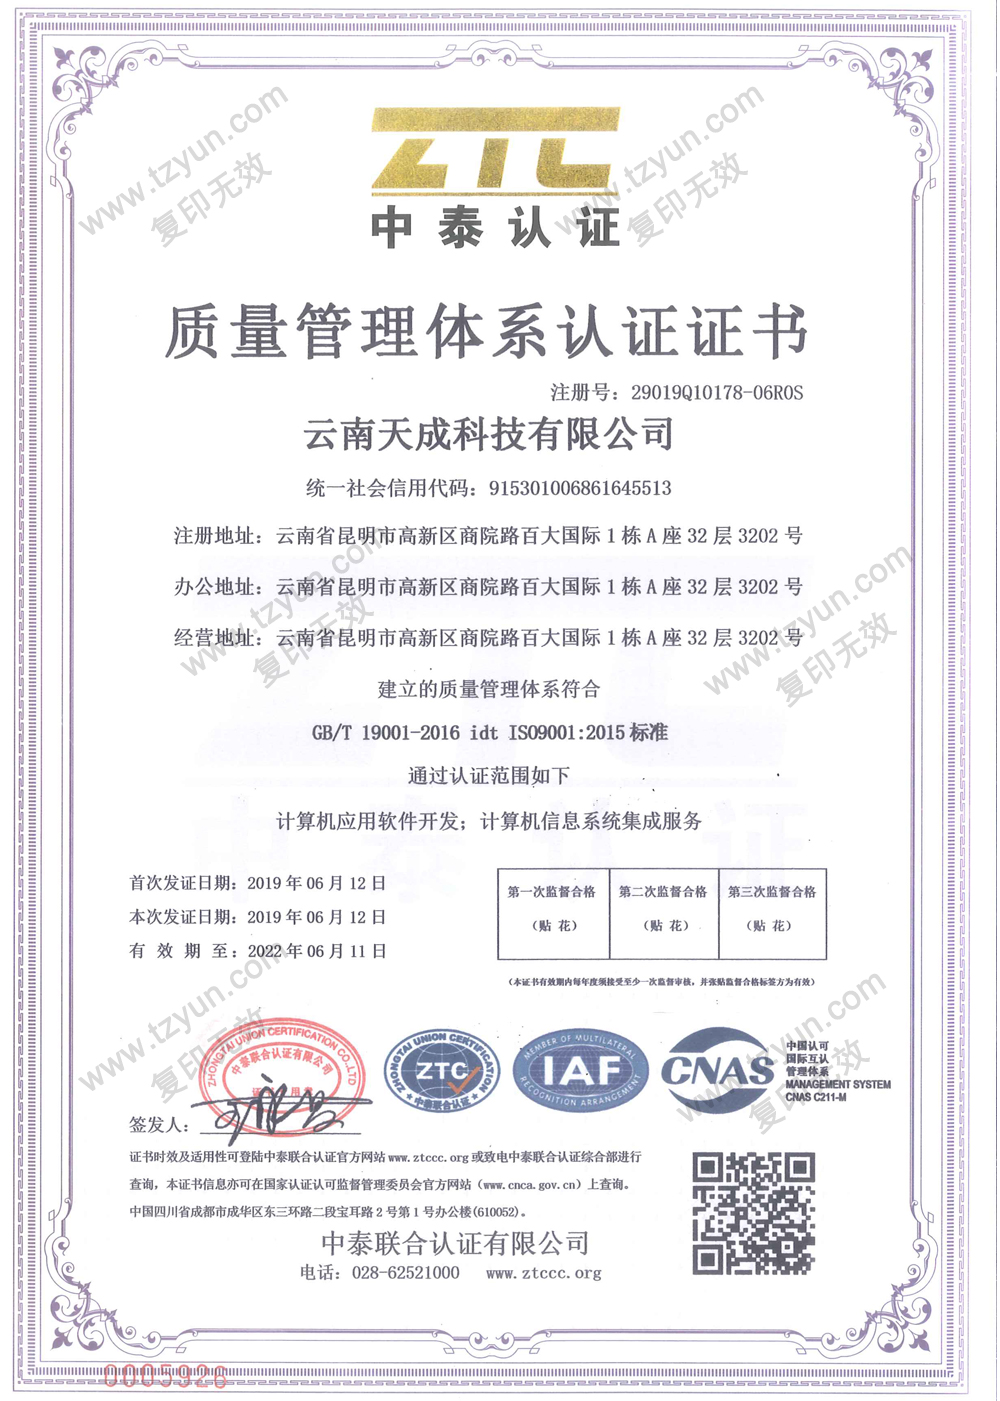 中泰认证-质量管理体系认证证书